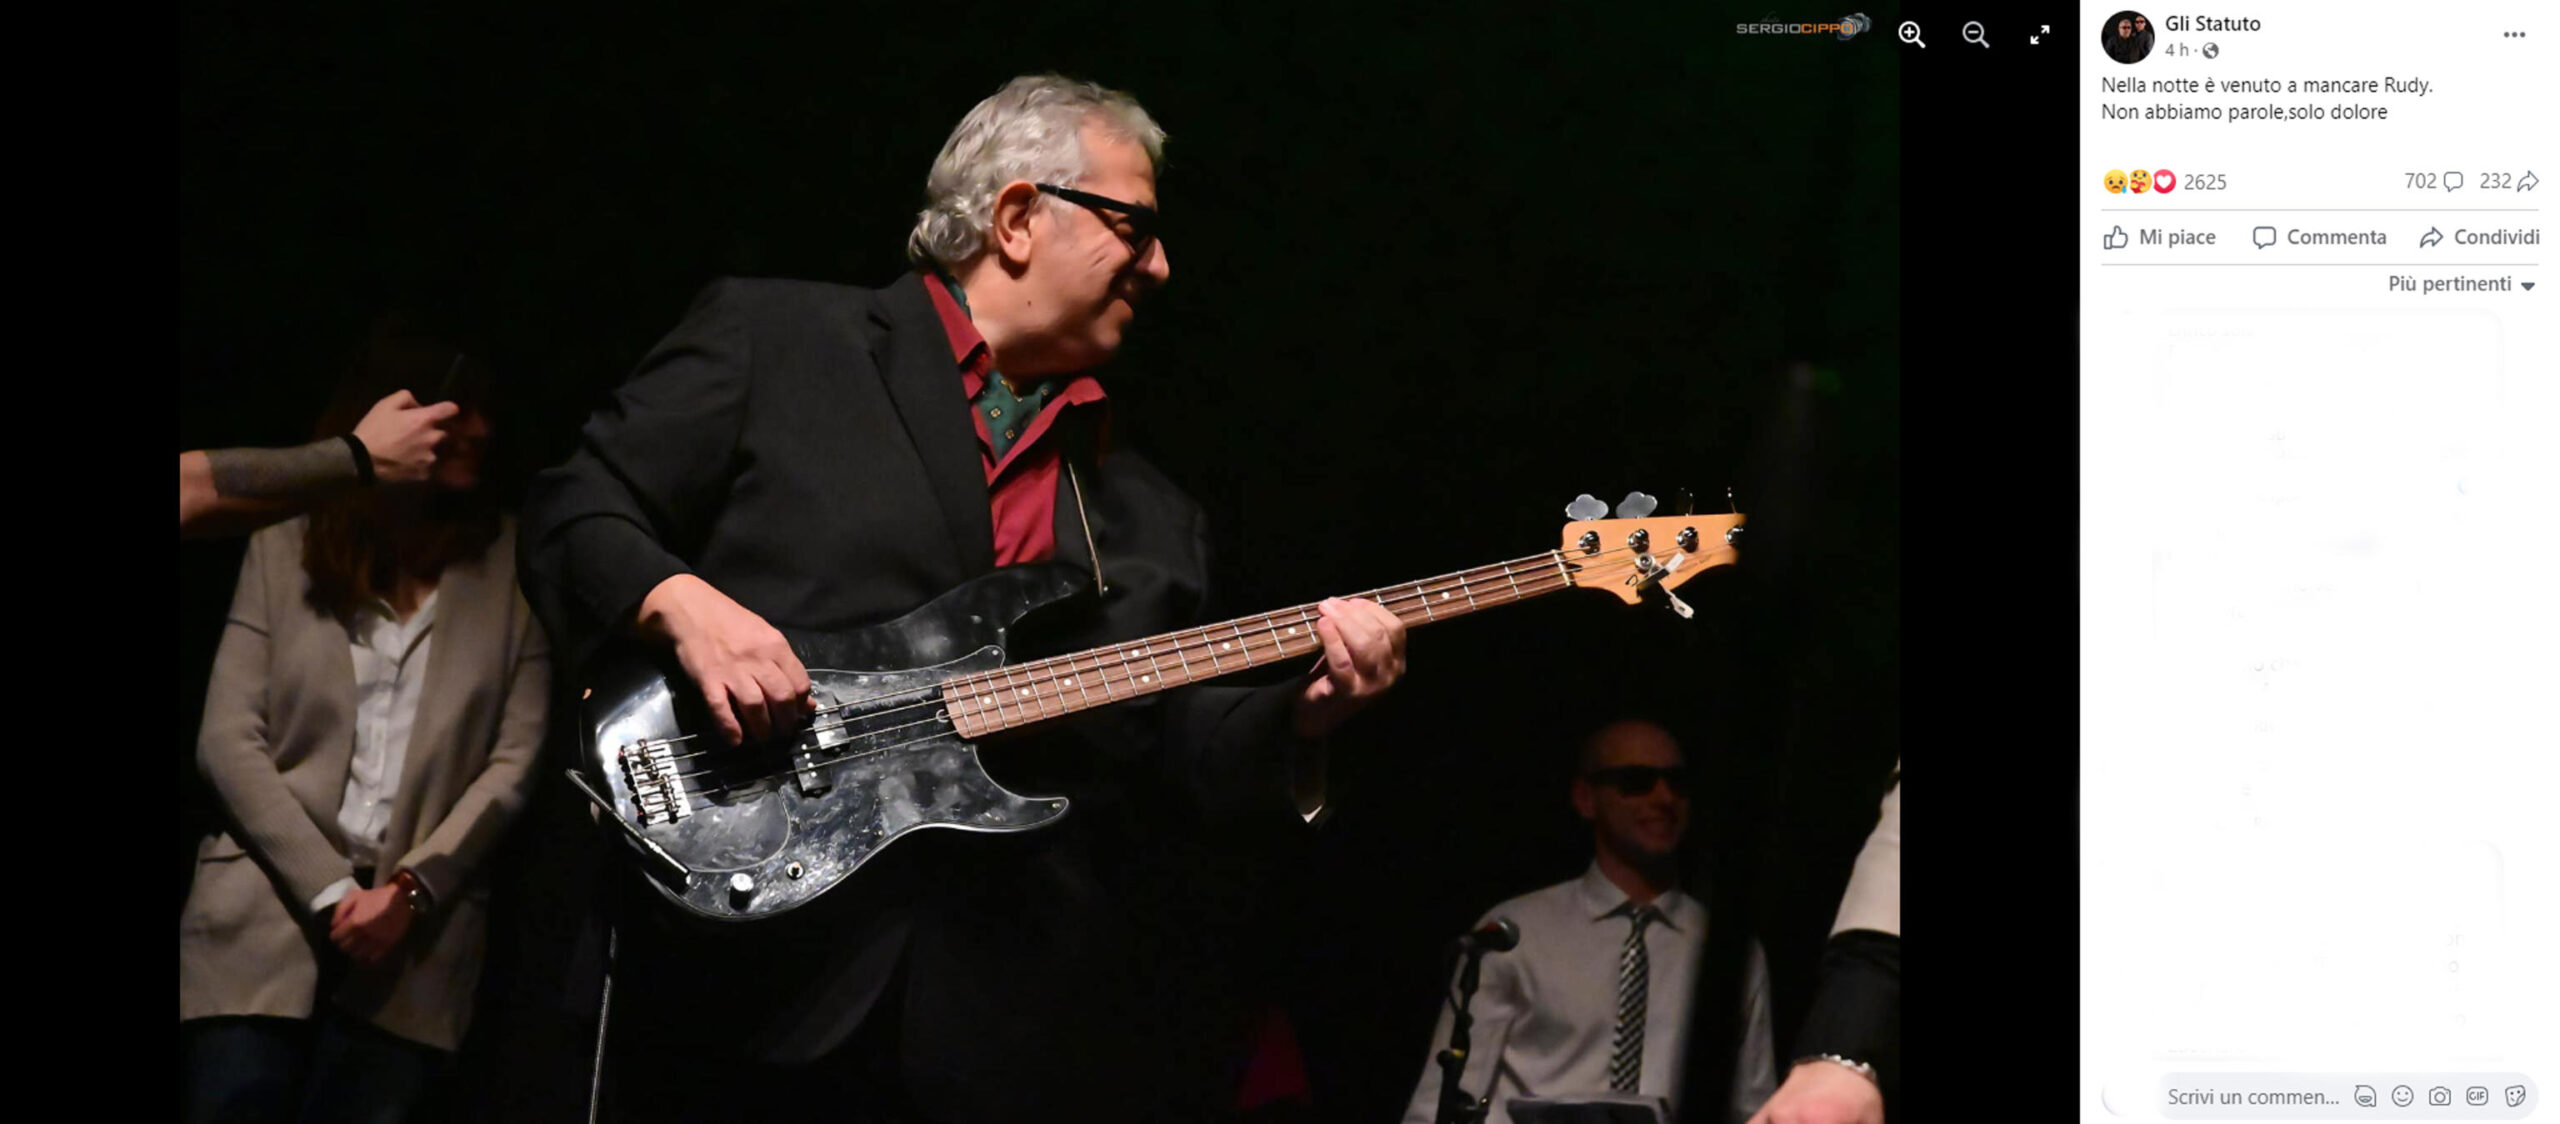 Addio a Rudy Ruzza, scomparso per una malattia lo storico bassista della band torinese degli Statuto